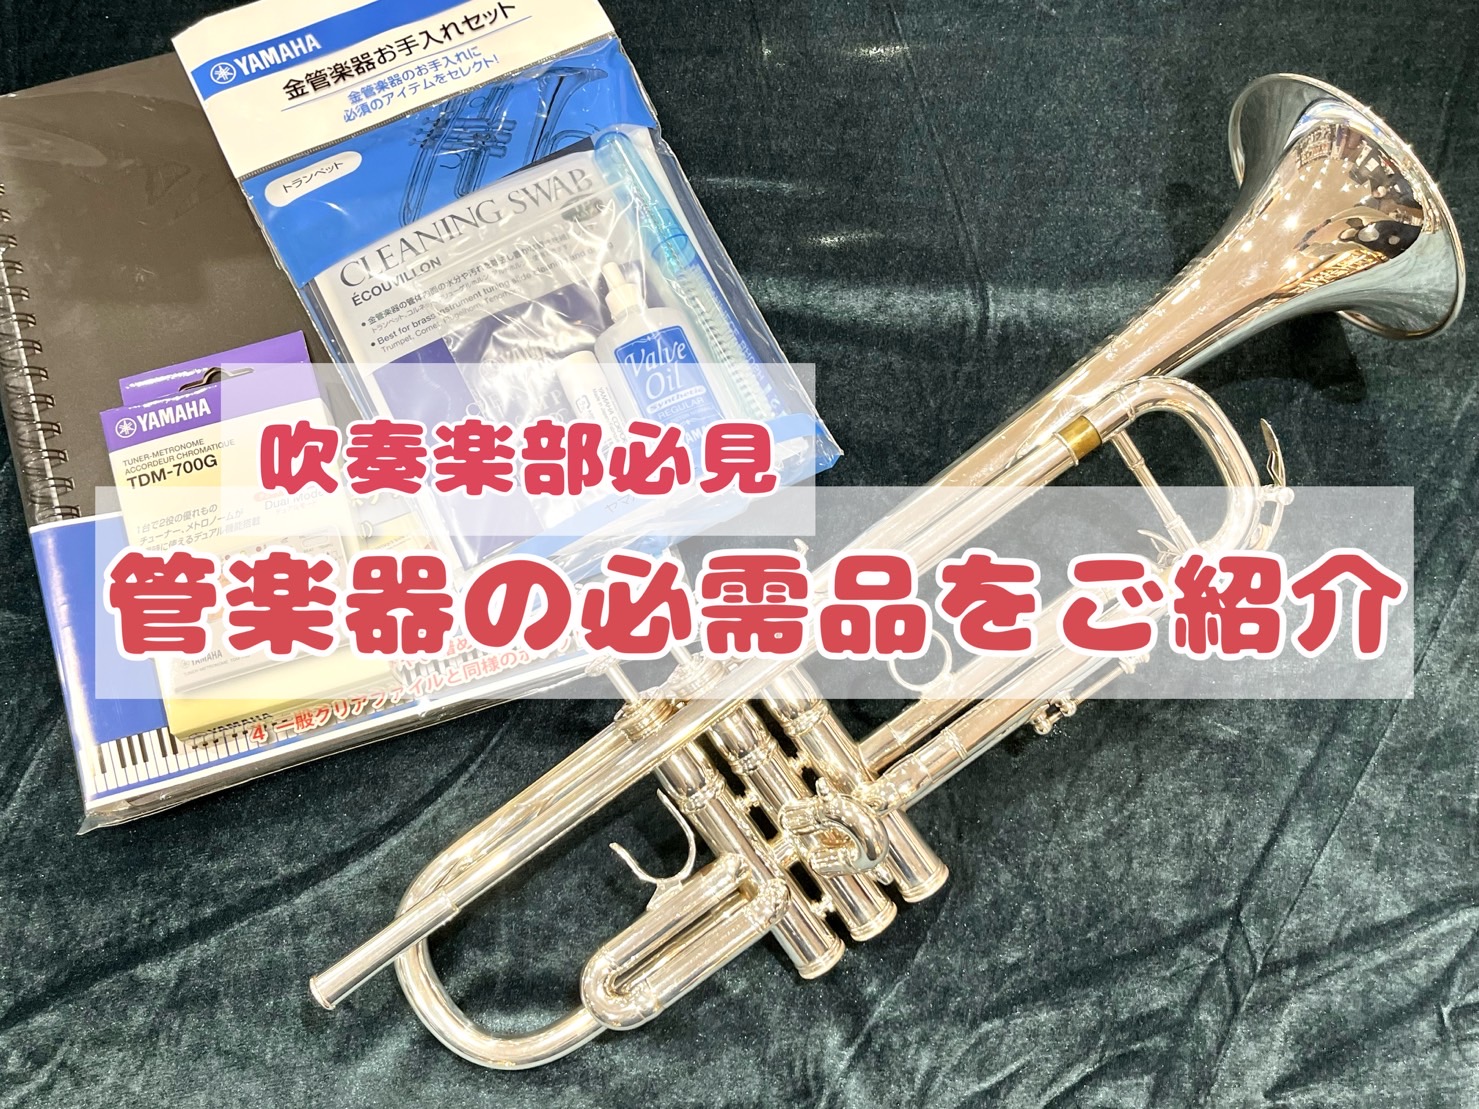 みなさま、こんにちは。島村楽器名古屋則武新町店の久野です。いきなりですが、みなさまは管楽器の演奏に必要なものを知っていますか？今回は部活動やサークルで役立つ管楽器の必需品についてご紹介いたします。あくまでひとつの例として是非参考にしてみてください！ CONTENTS演奏・練習に必要なもの木管楽器の必 […]